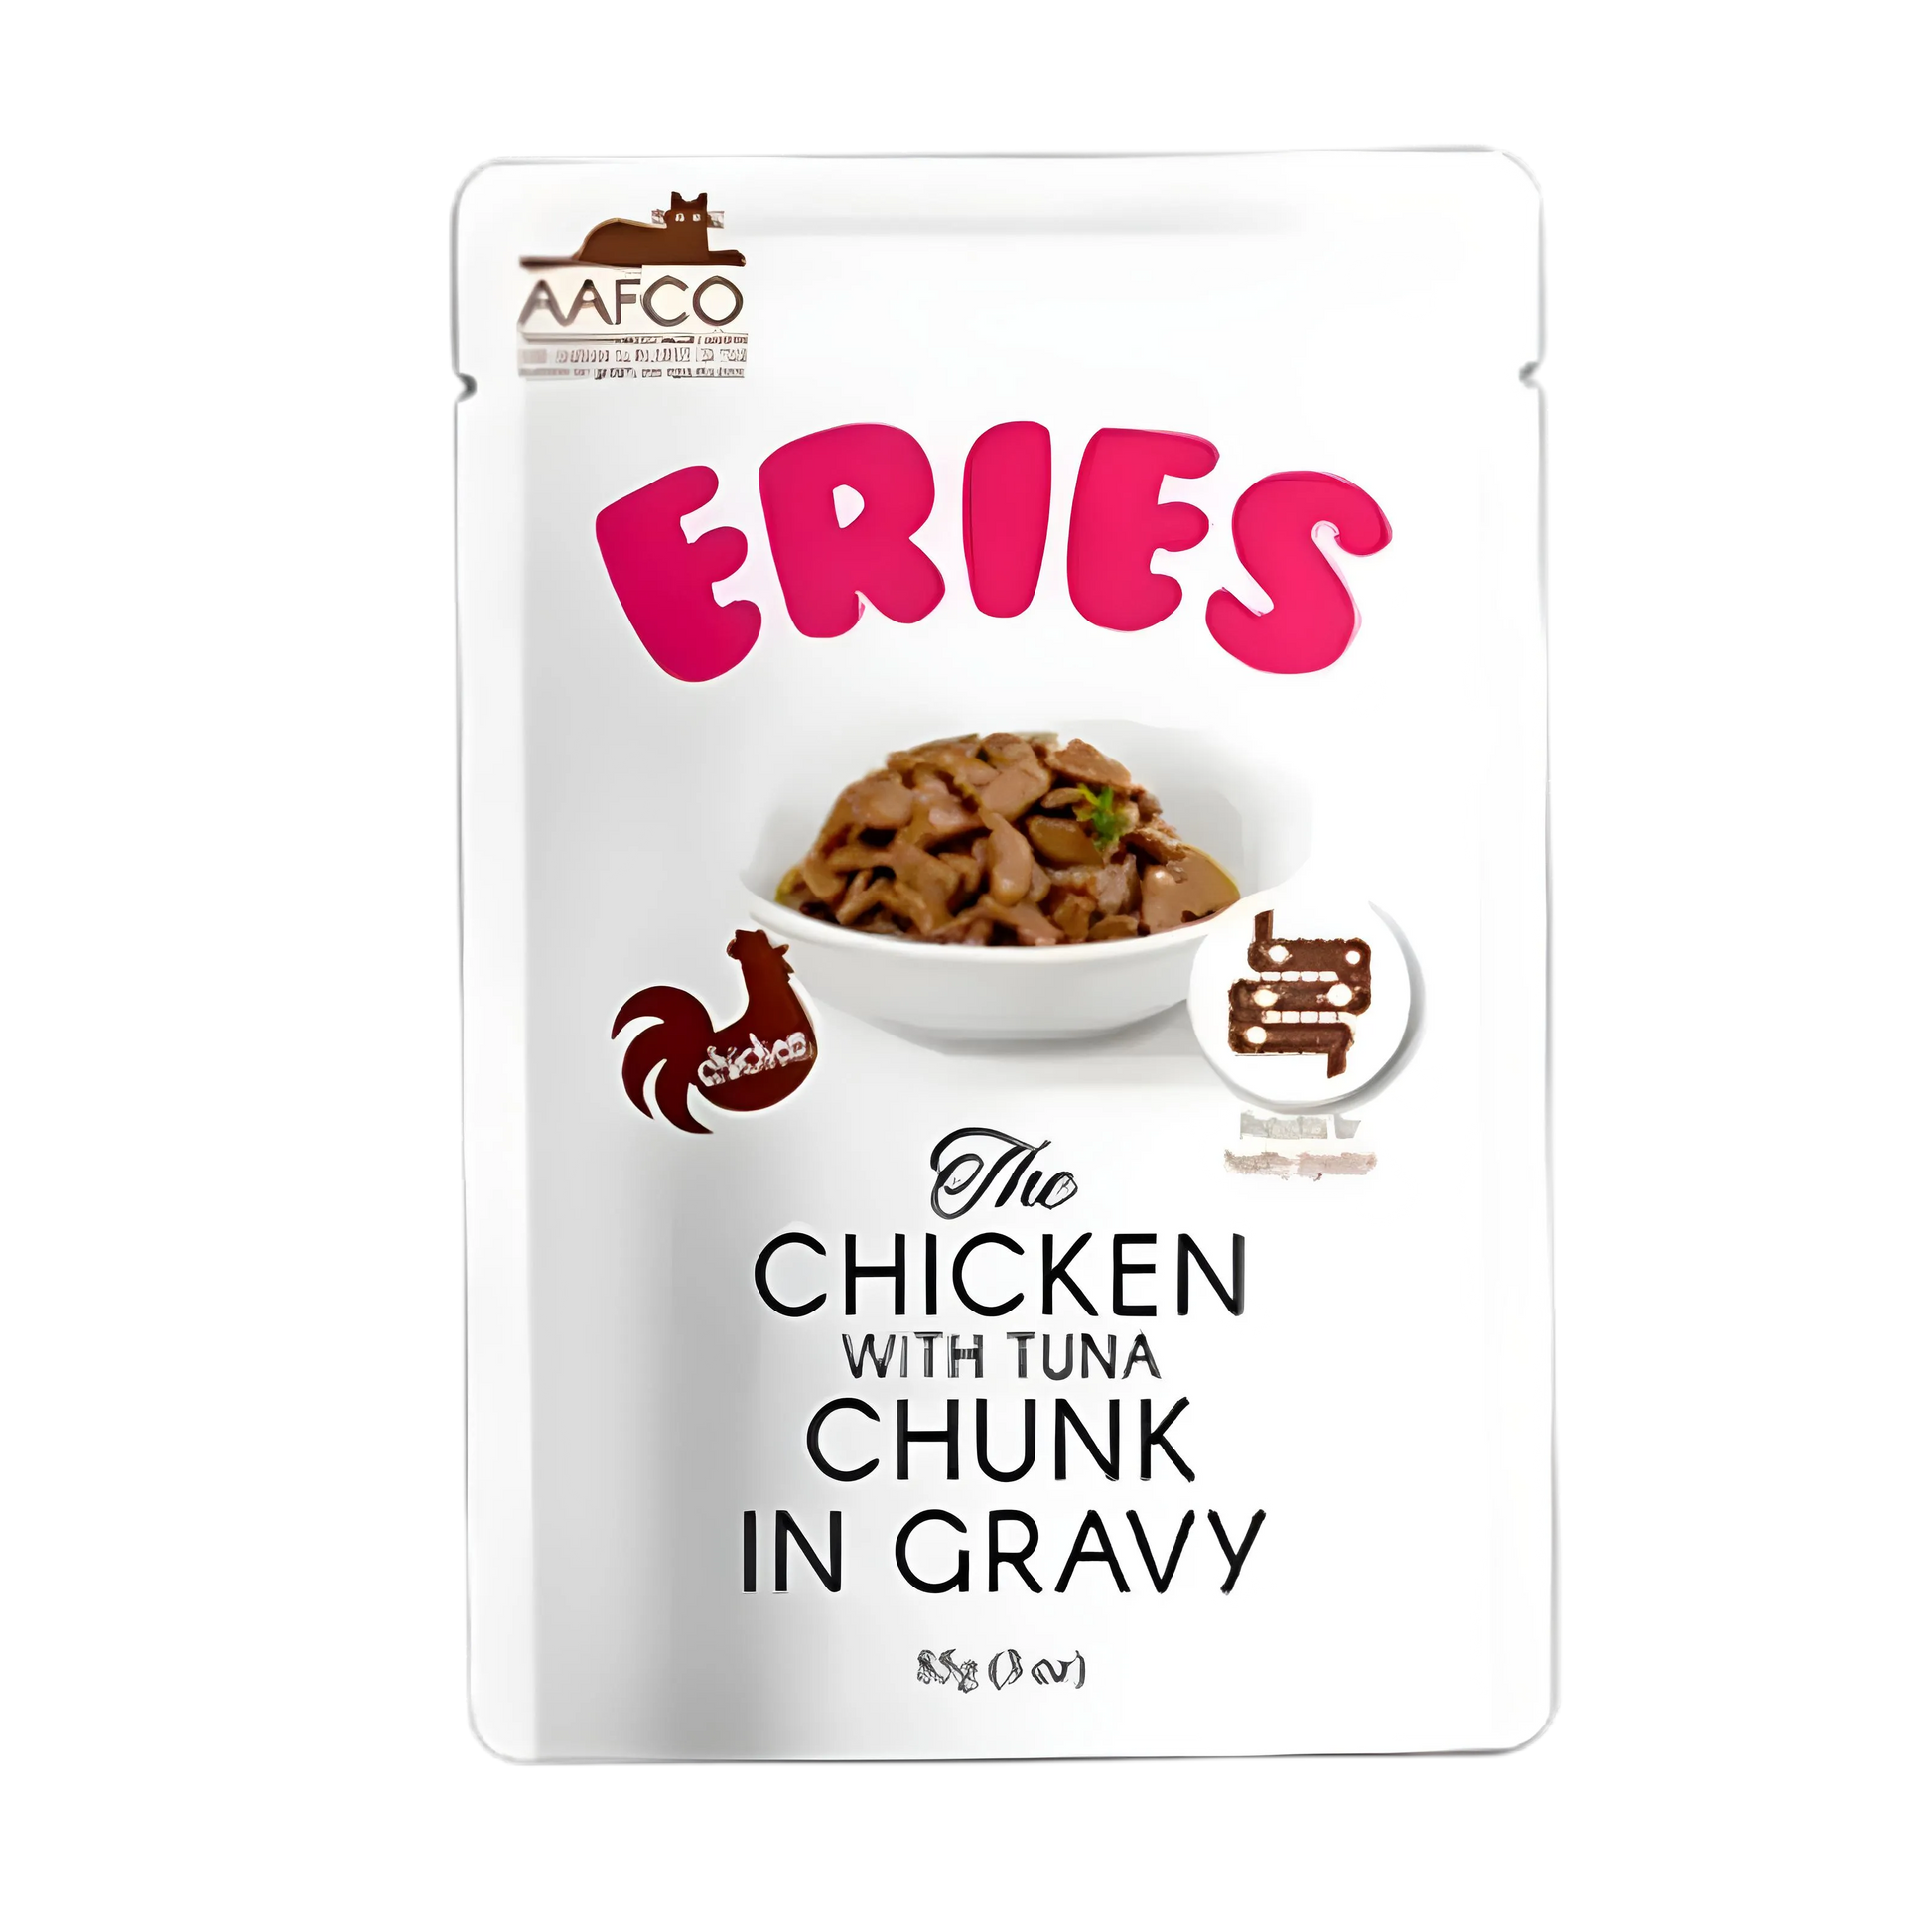 Eries Pouch in Gravy Chicken w/Tuna Chuck 85g x12-Eries-Catsmart-express